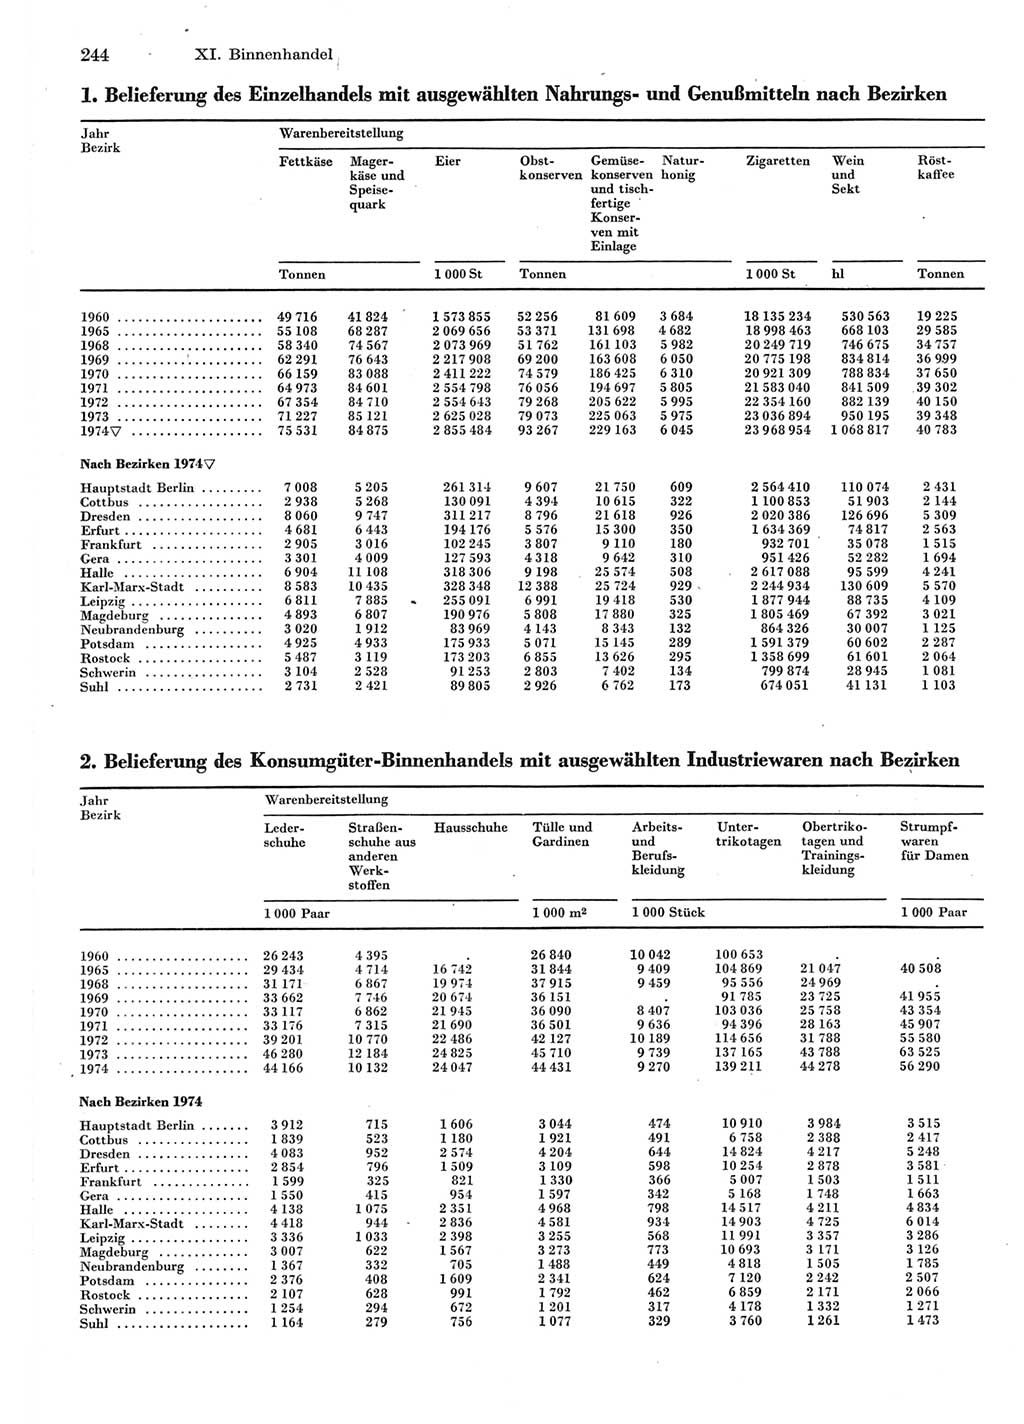 Statistisches Jahrbuch der Deutschen Demokratischen Republik (DDR) 1975, Seite 244 (Stat. Jb. DDR 1975, S. 244)